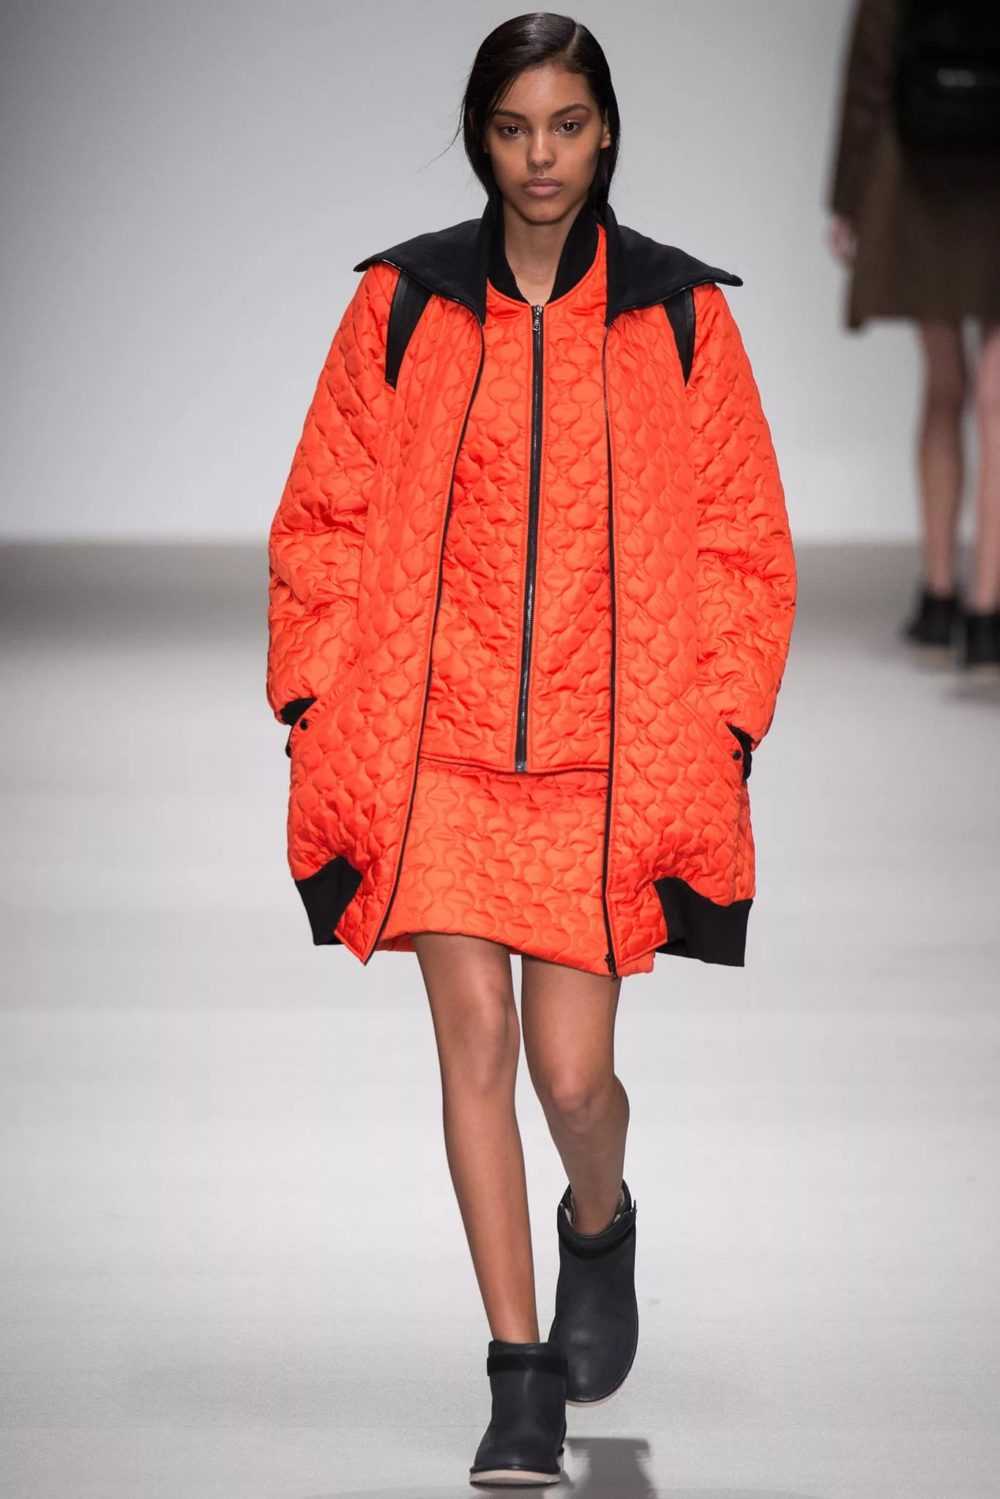 В моде зимой 2018 — 2019 остается женственность и асимметричные куртки с большими воротниками